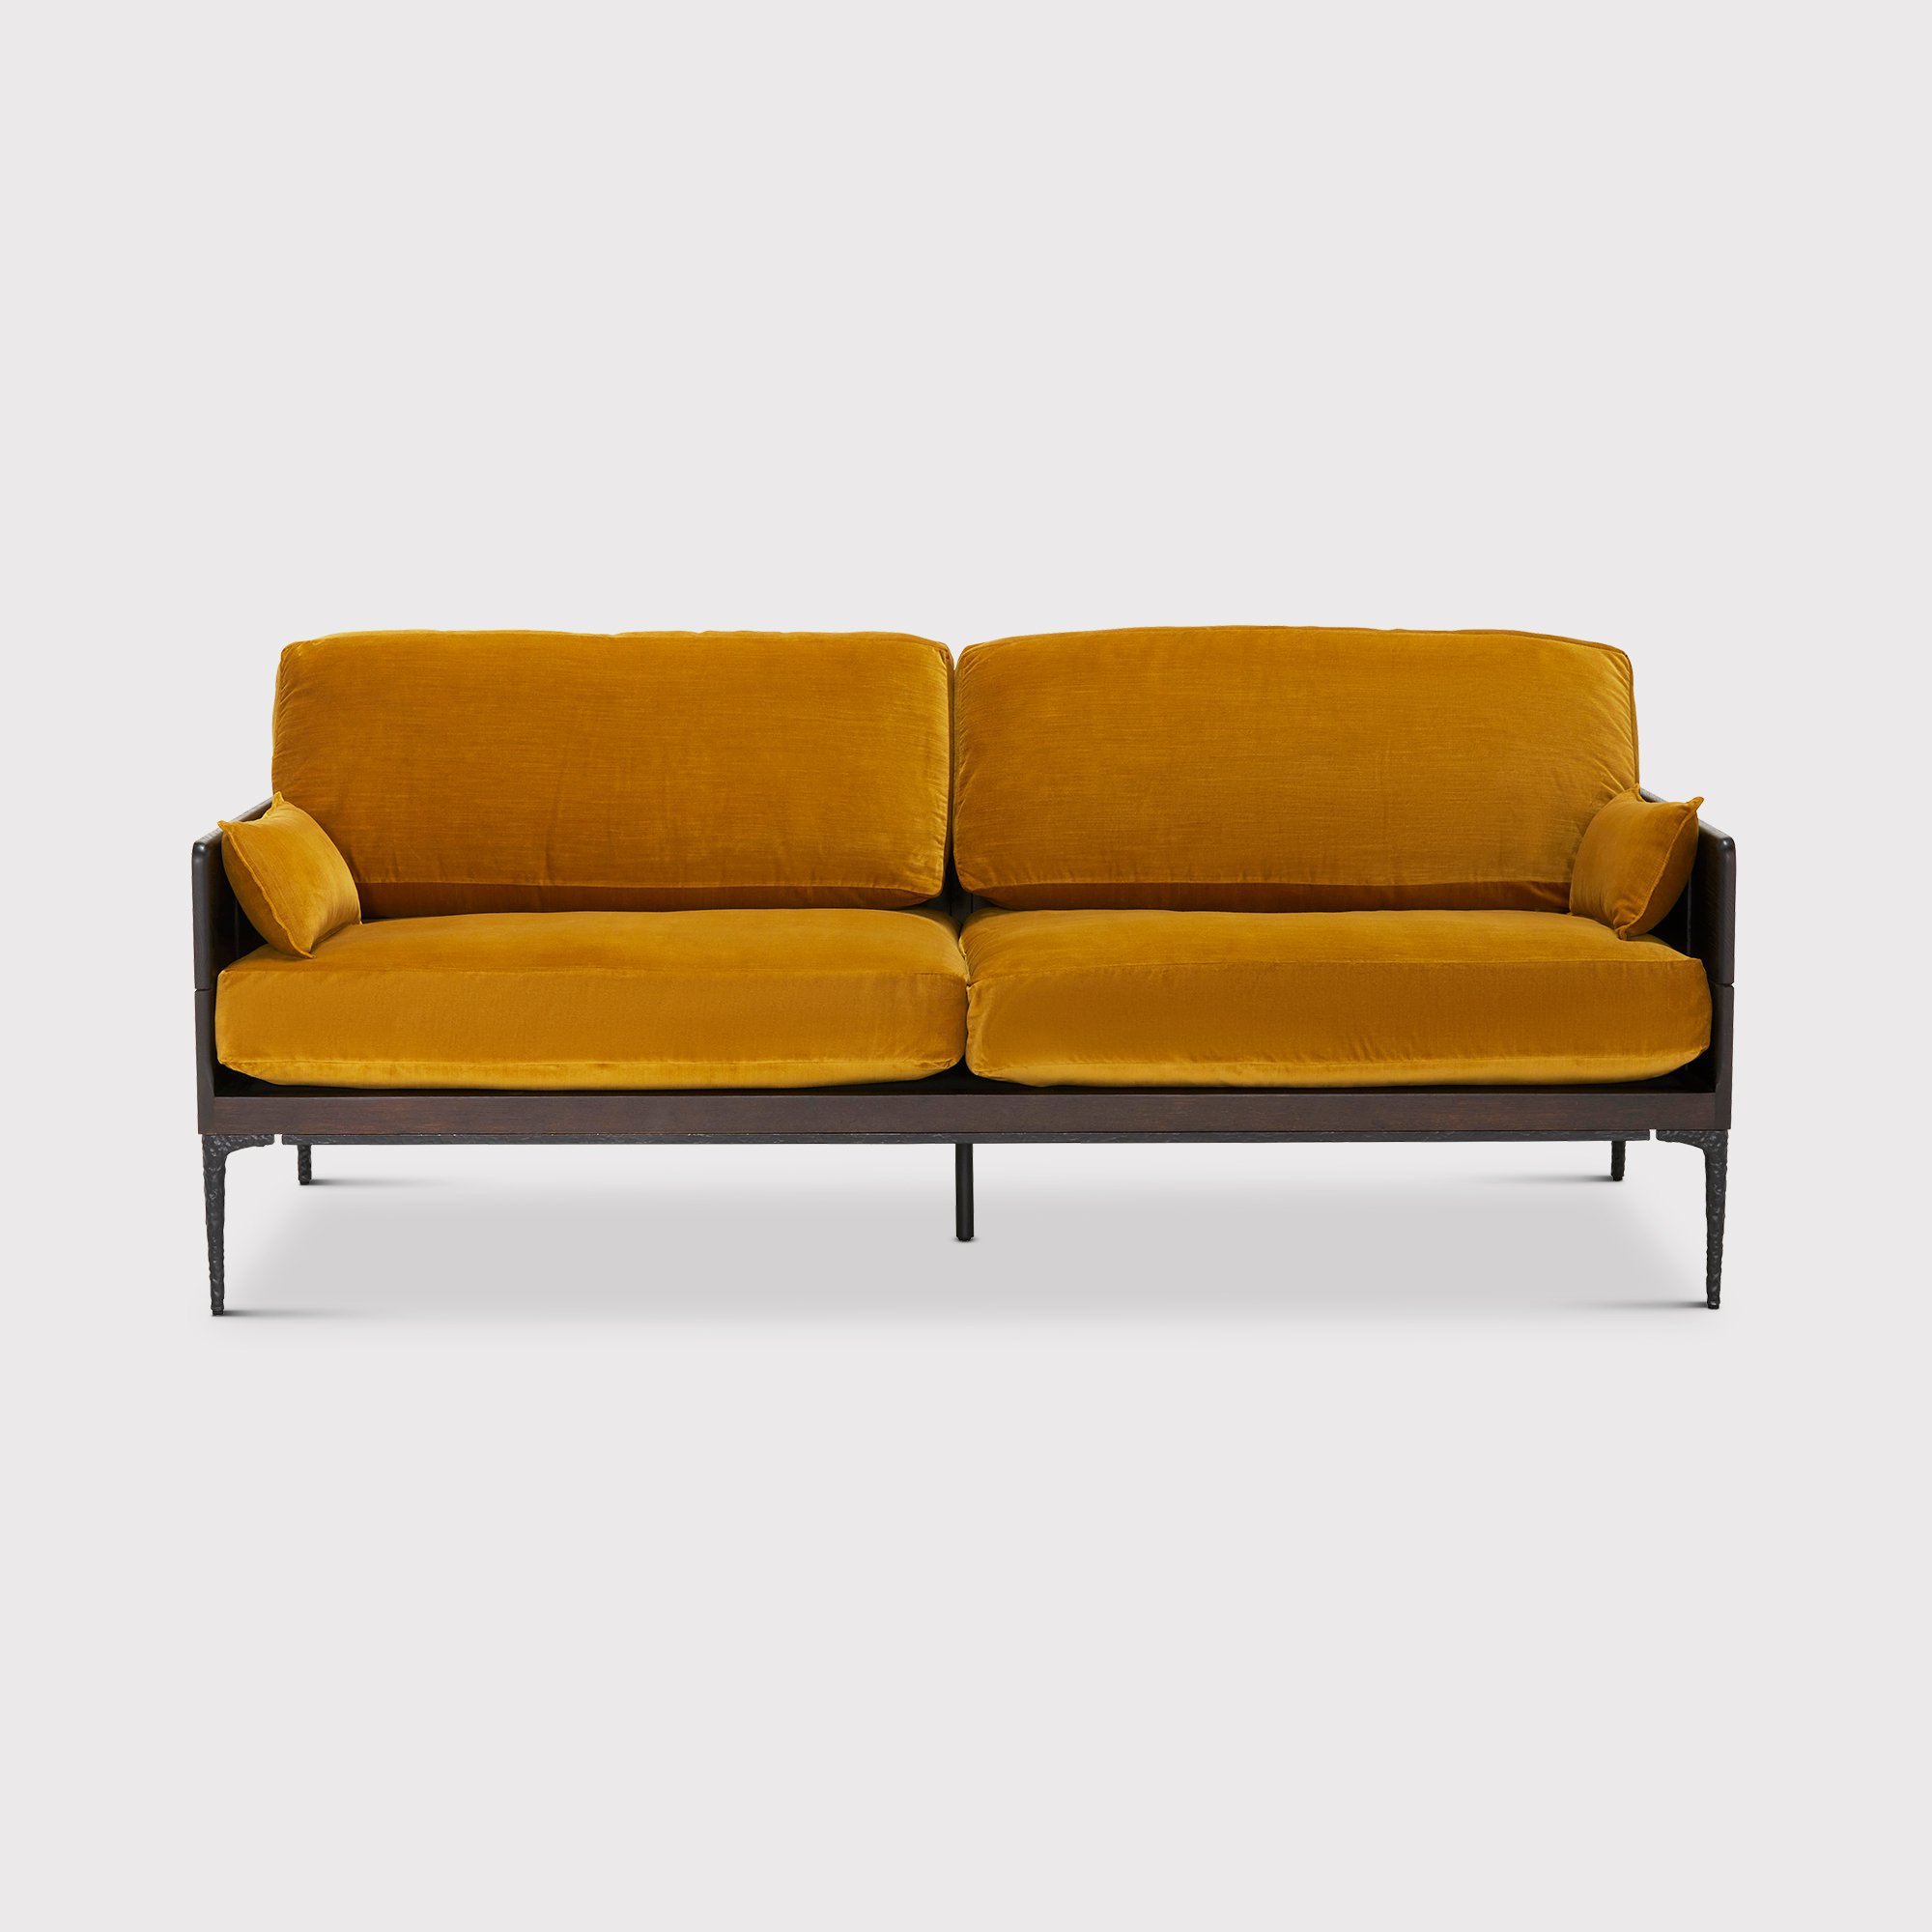 Photo of Bozan 3 seater sofa in yellow fabric